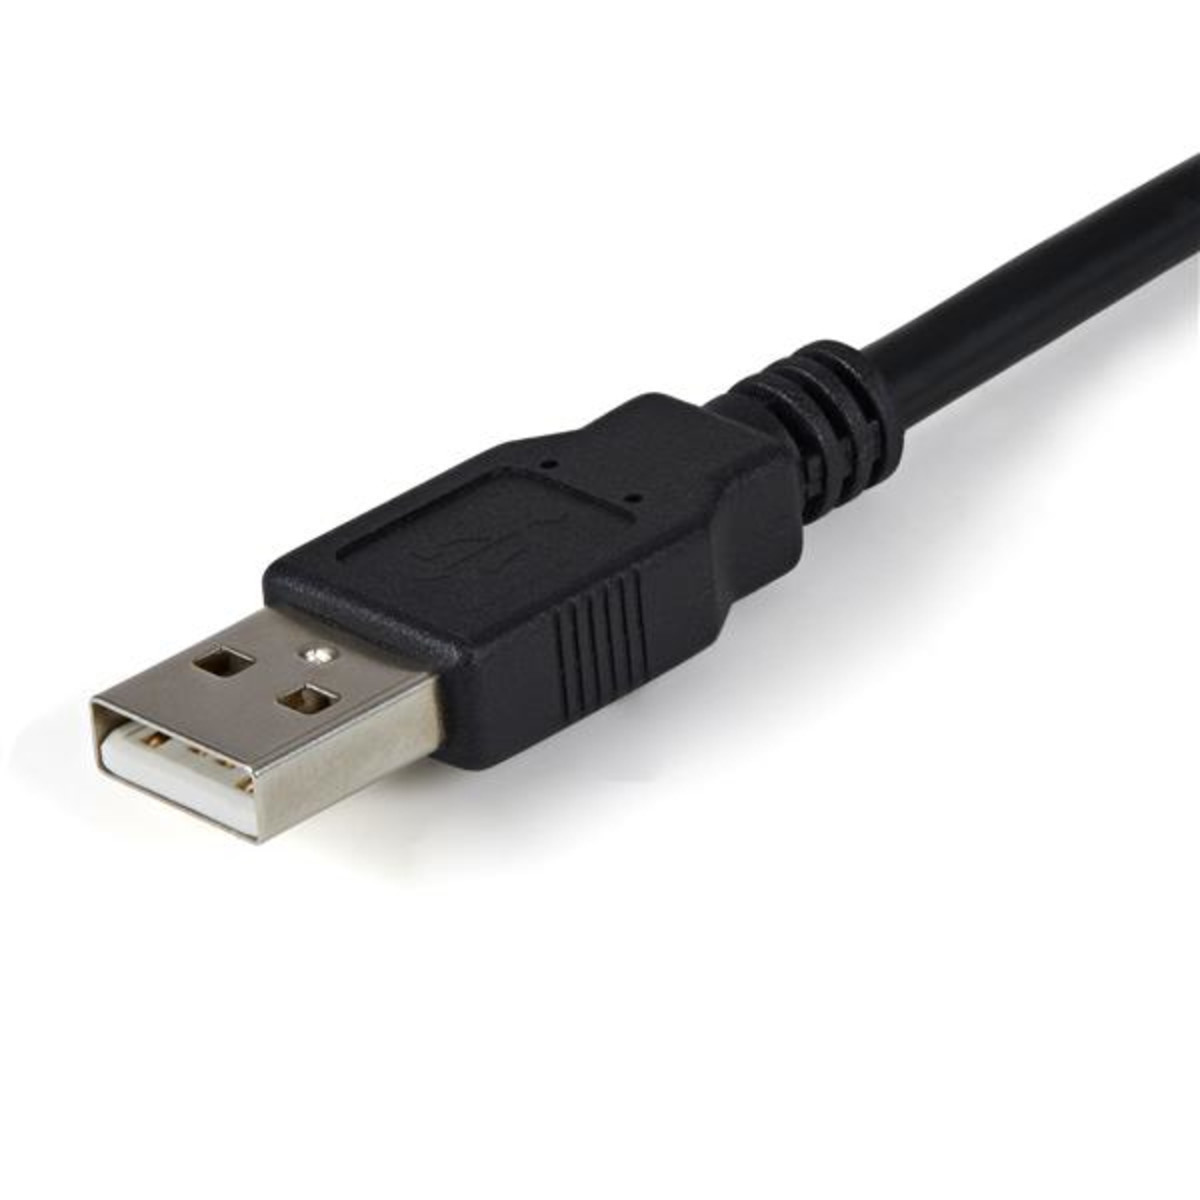 2Port FTDI USB-Serial RS232 Adpt Cable